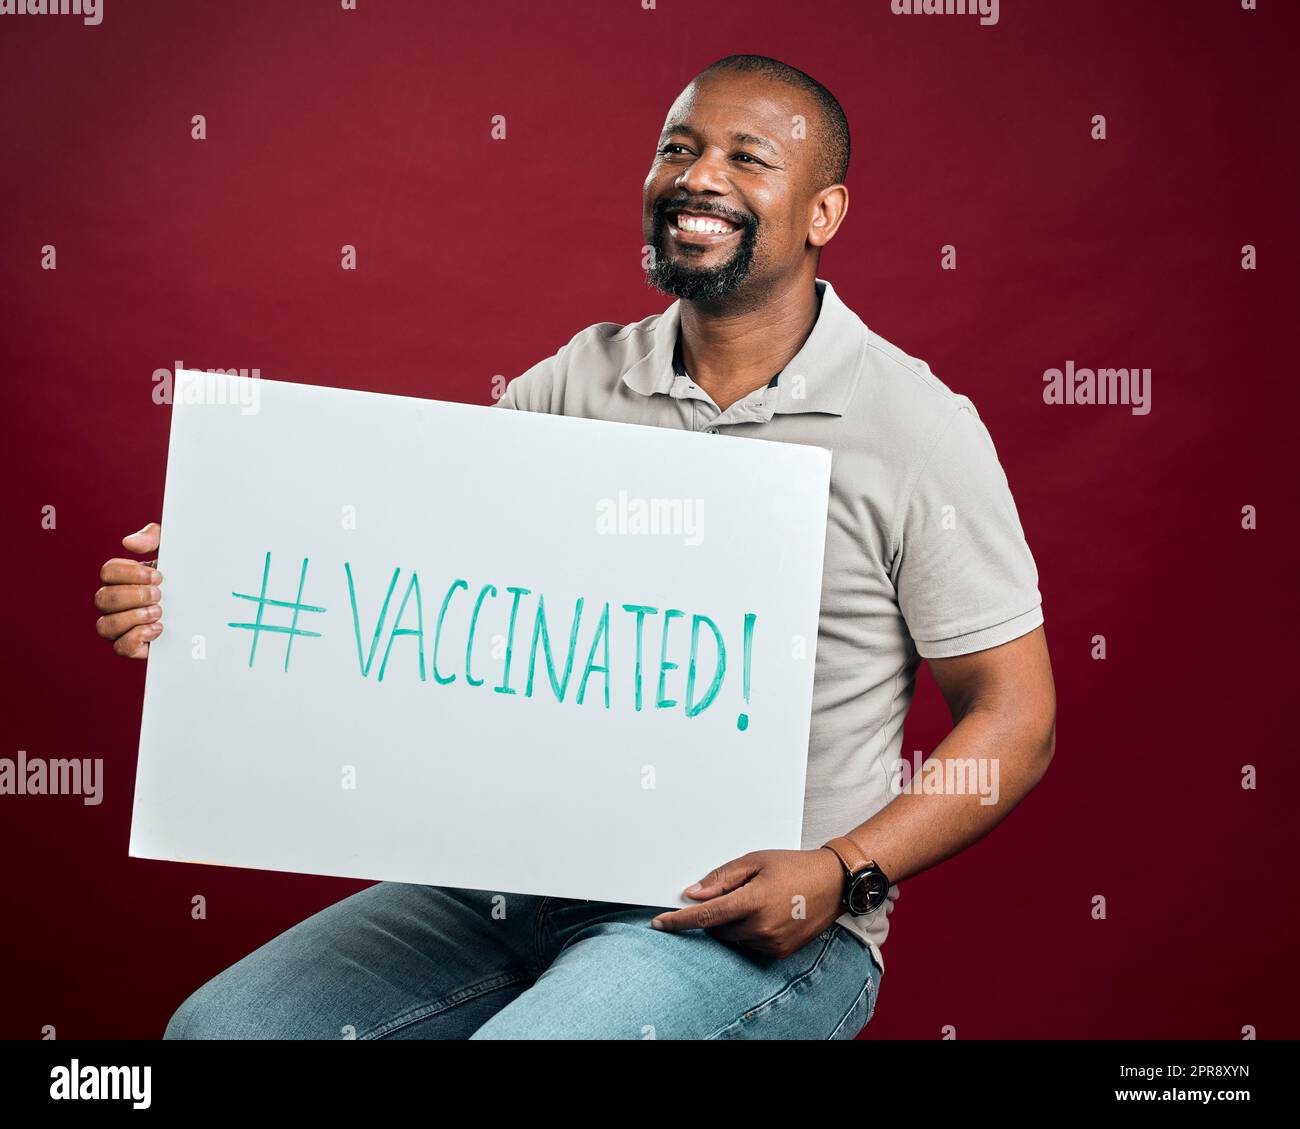 Homme vacciné covid afro-américain montrant et tenant une affiche. Homme noir souriant isolé contre arrière-plan rouge studio avec espace de copie. Modèle heureux utilisant le signe pour promouvoir le vaccin corona et motiver Banque D'Images